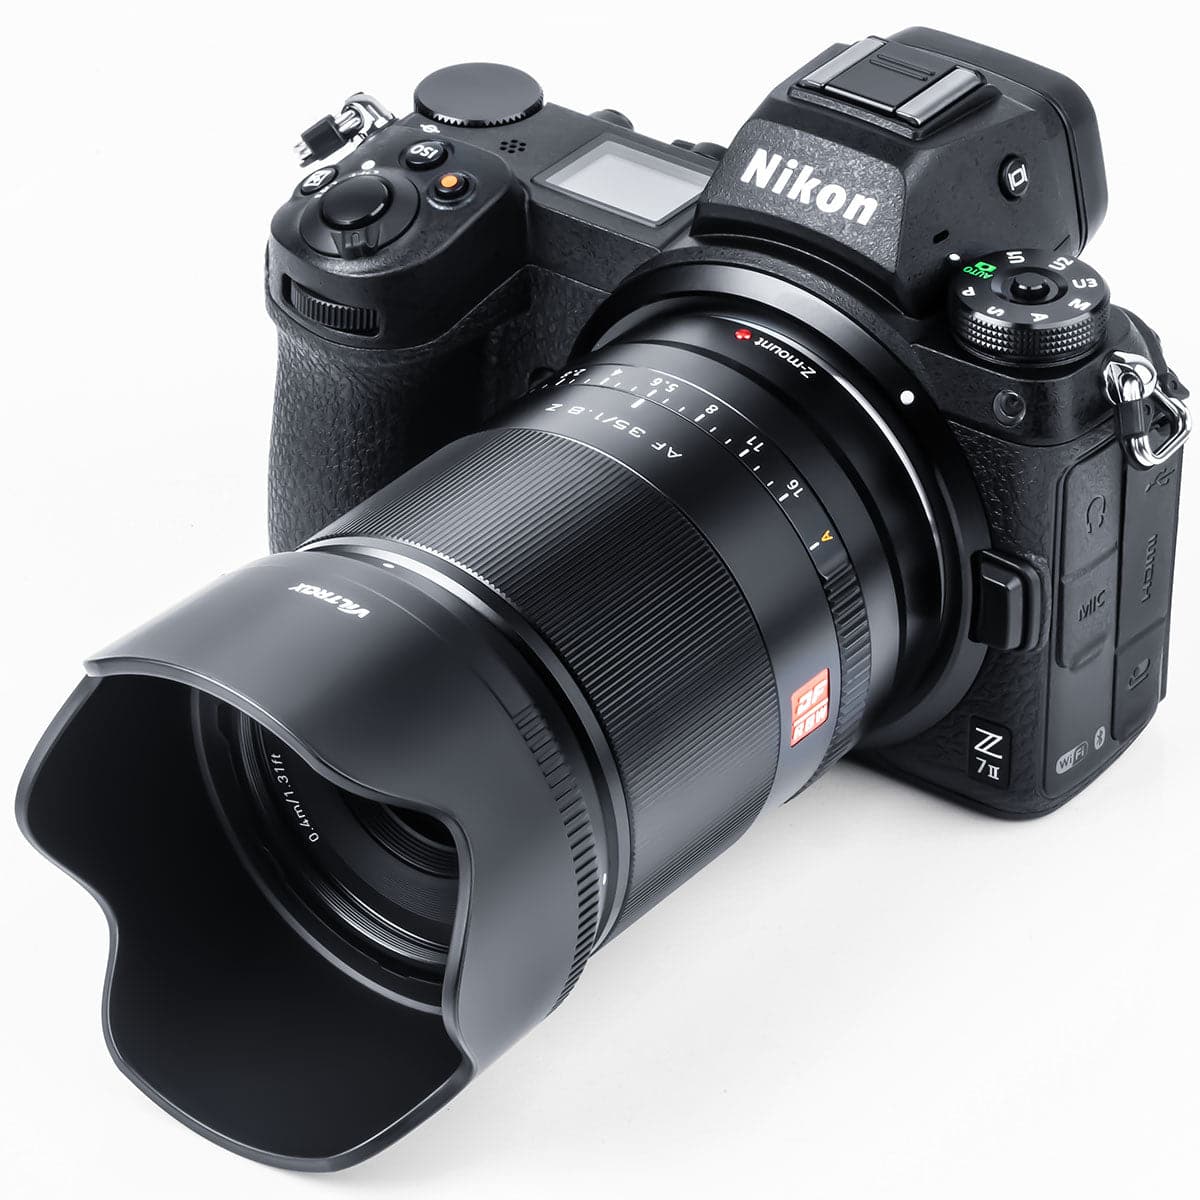 Viltrox 35mm F/1.8 Z-mount Autofocus Full-frame Prime Lens Designed for Nikon Z Mirrorless Z5/Z6/Z7/Z50/Zfc